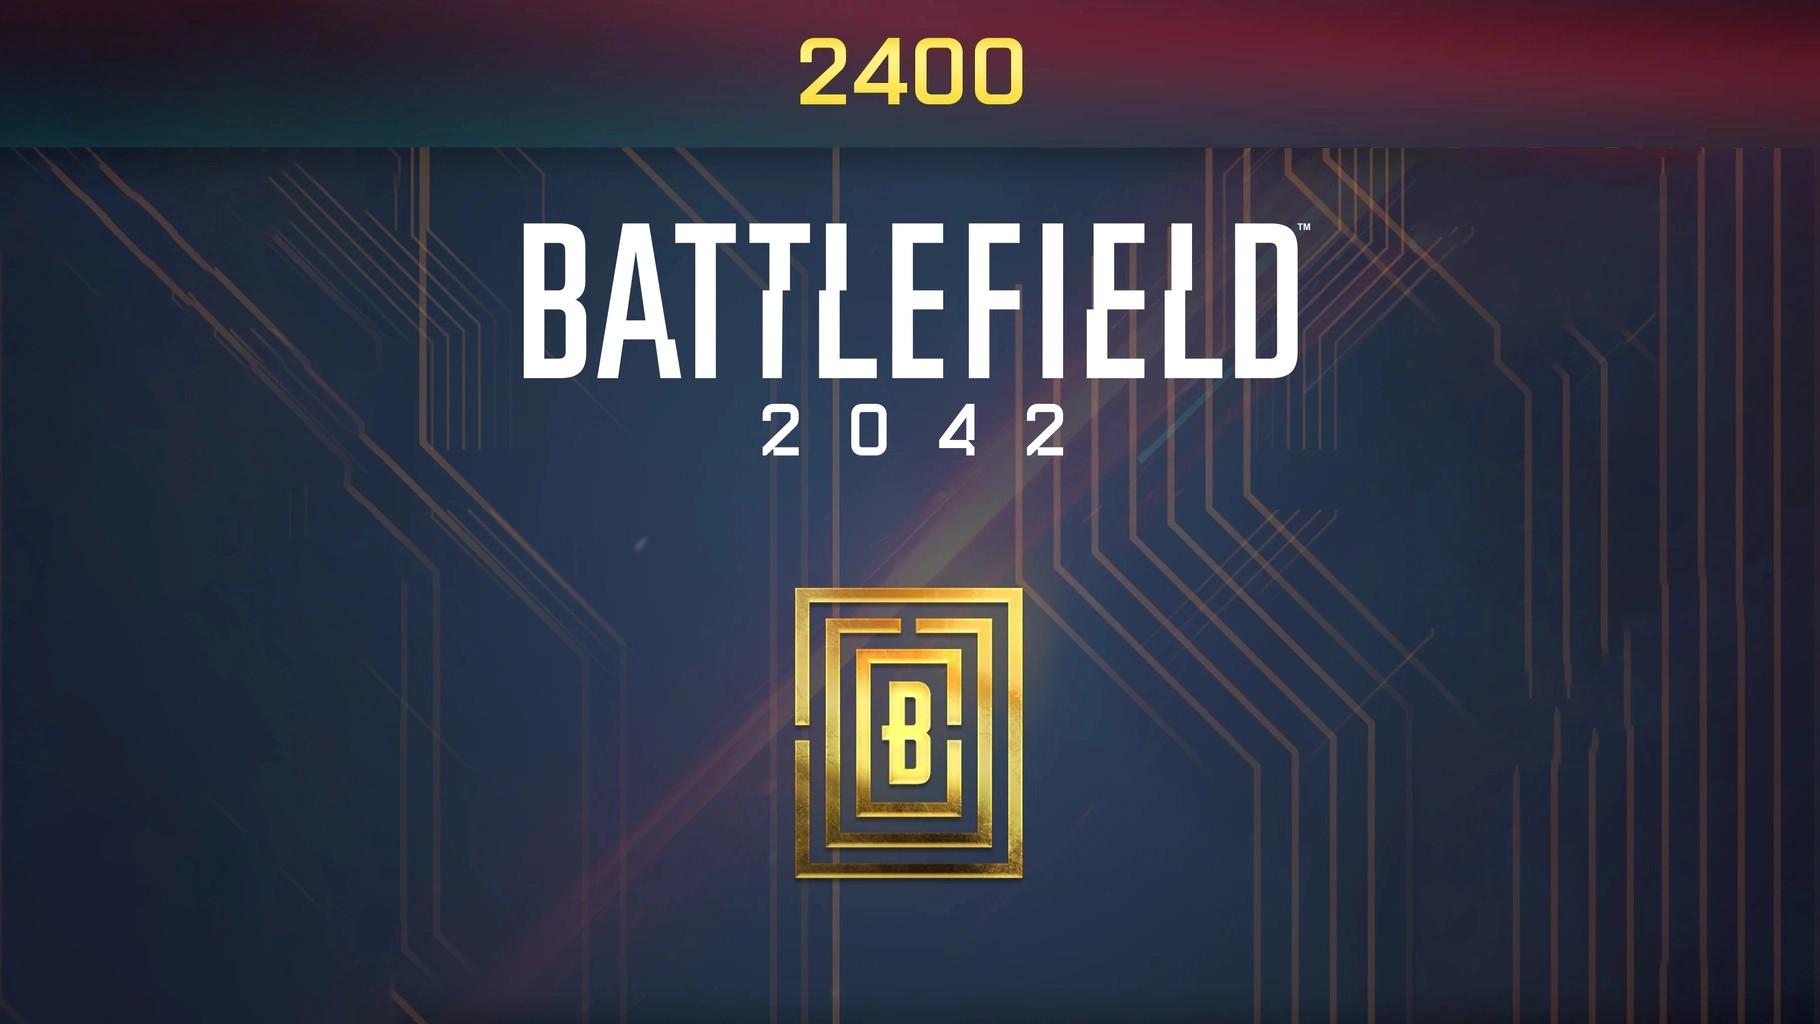 (20.9$) Battlefield 2042 - 2400 BFC Balance XBOX One / Xbox Series X|S CD Key